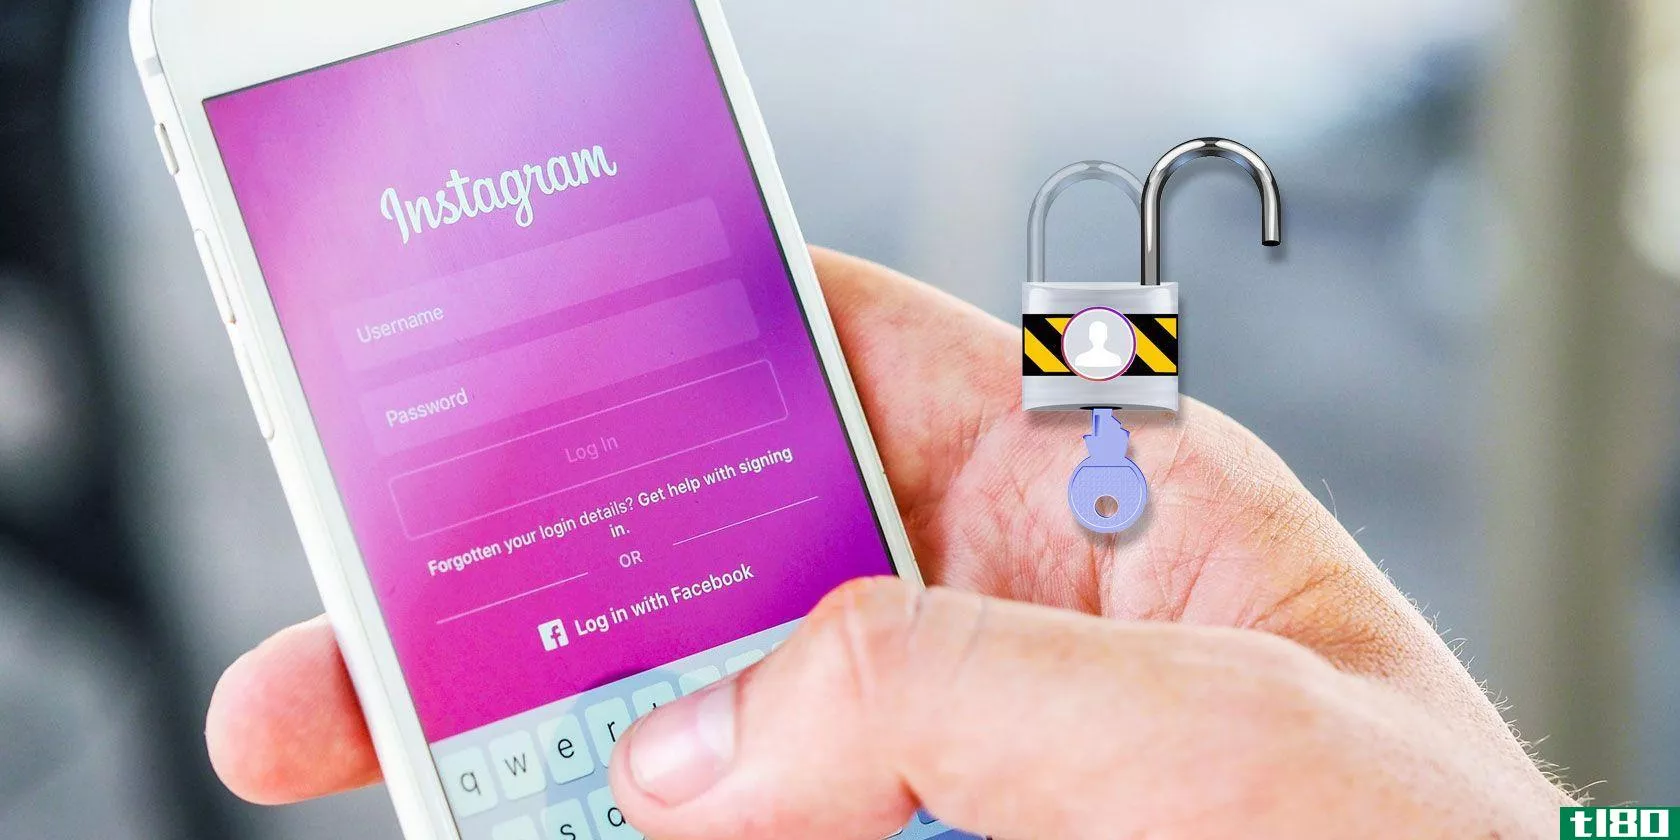 如何在instagram上解锁某人